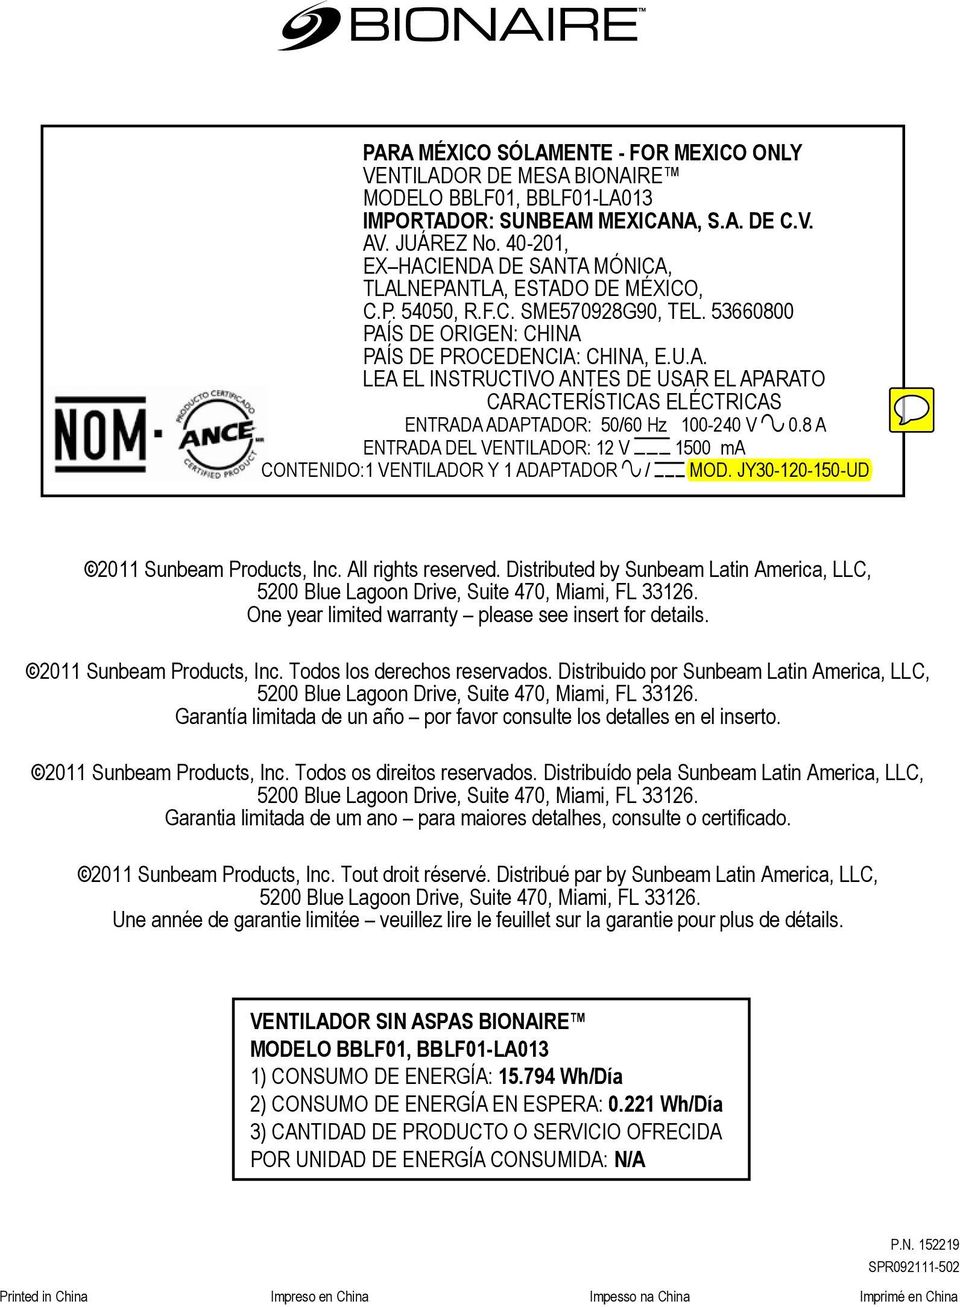 8 A ENTRADA DEL VENTILADOR: 12 V 1500 ma CONTENIDO:1 VENTILADOR Y 1 ADAPTADOR / MOD. JY30-120-150-UD 2011 Sunbeam Products, Inc. All rights reserved.